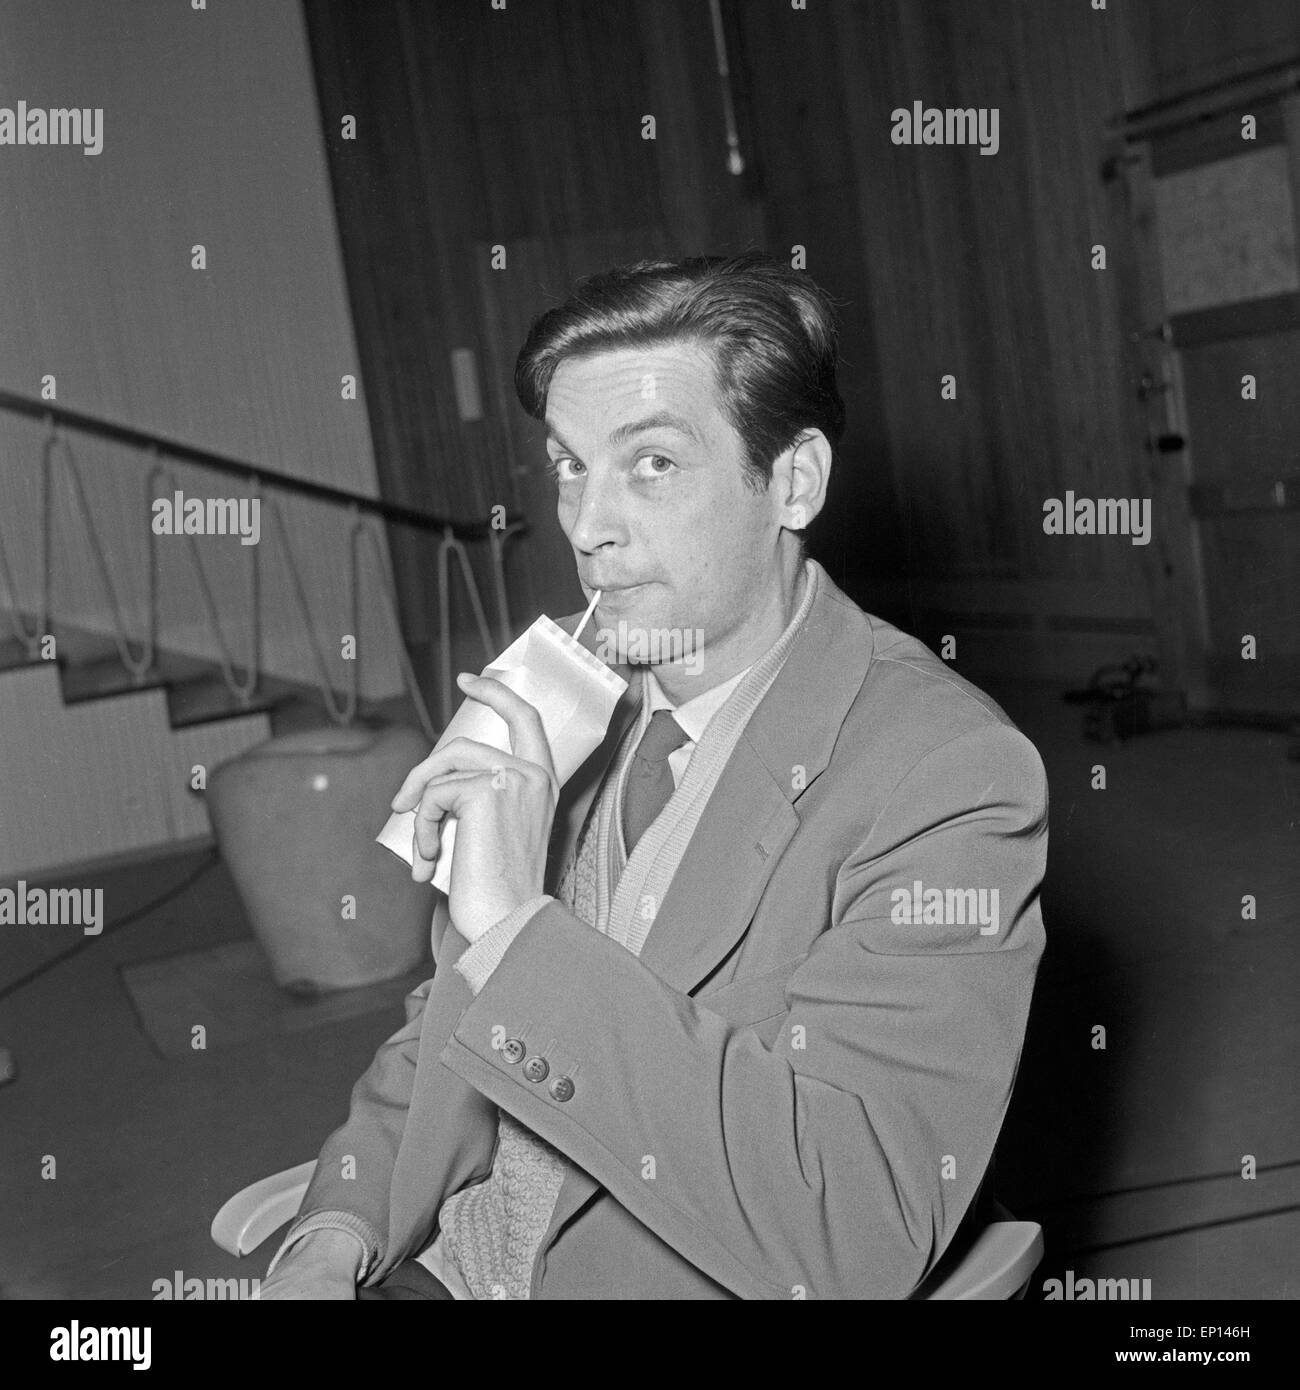 Deutscher Schauspieler, Synchron- und Hörspielsprecher Günther Dockerill trinkt eine Milch in einer Pause, Deutschland 1950er Stock Photo